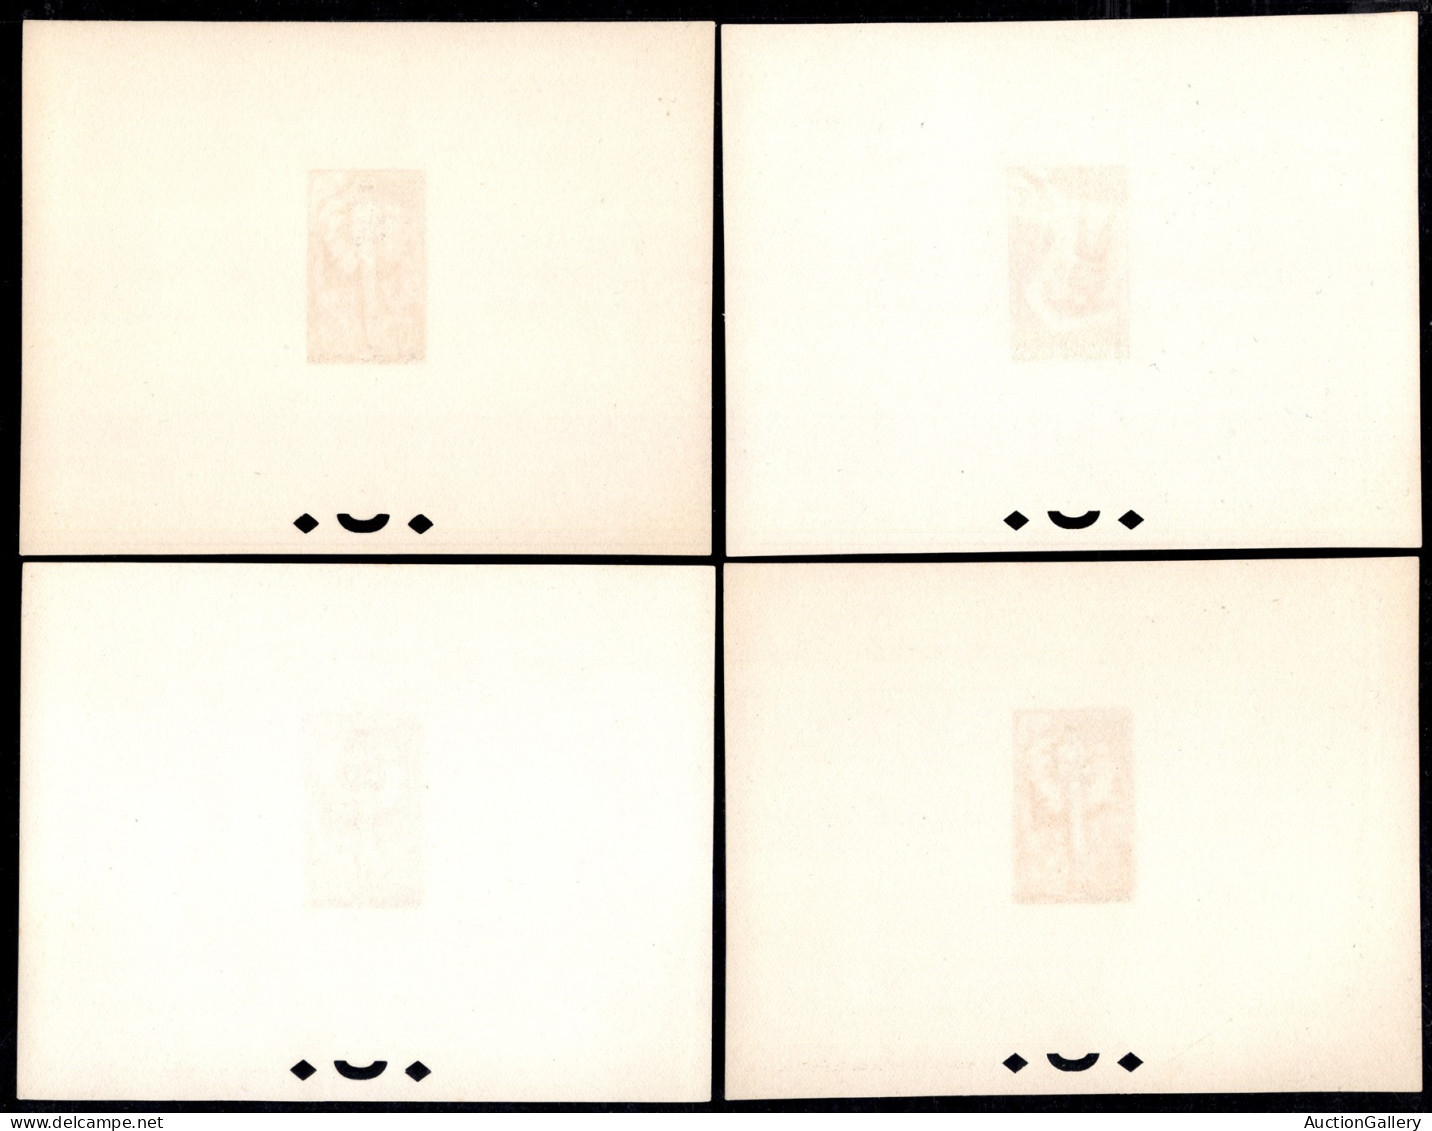 OLTREMARE - BURKINA FASO - 1960 - Haute Volta - Prove di lusso - Maschere tribali (71/88) - serie completa in foglietti 